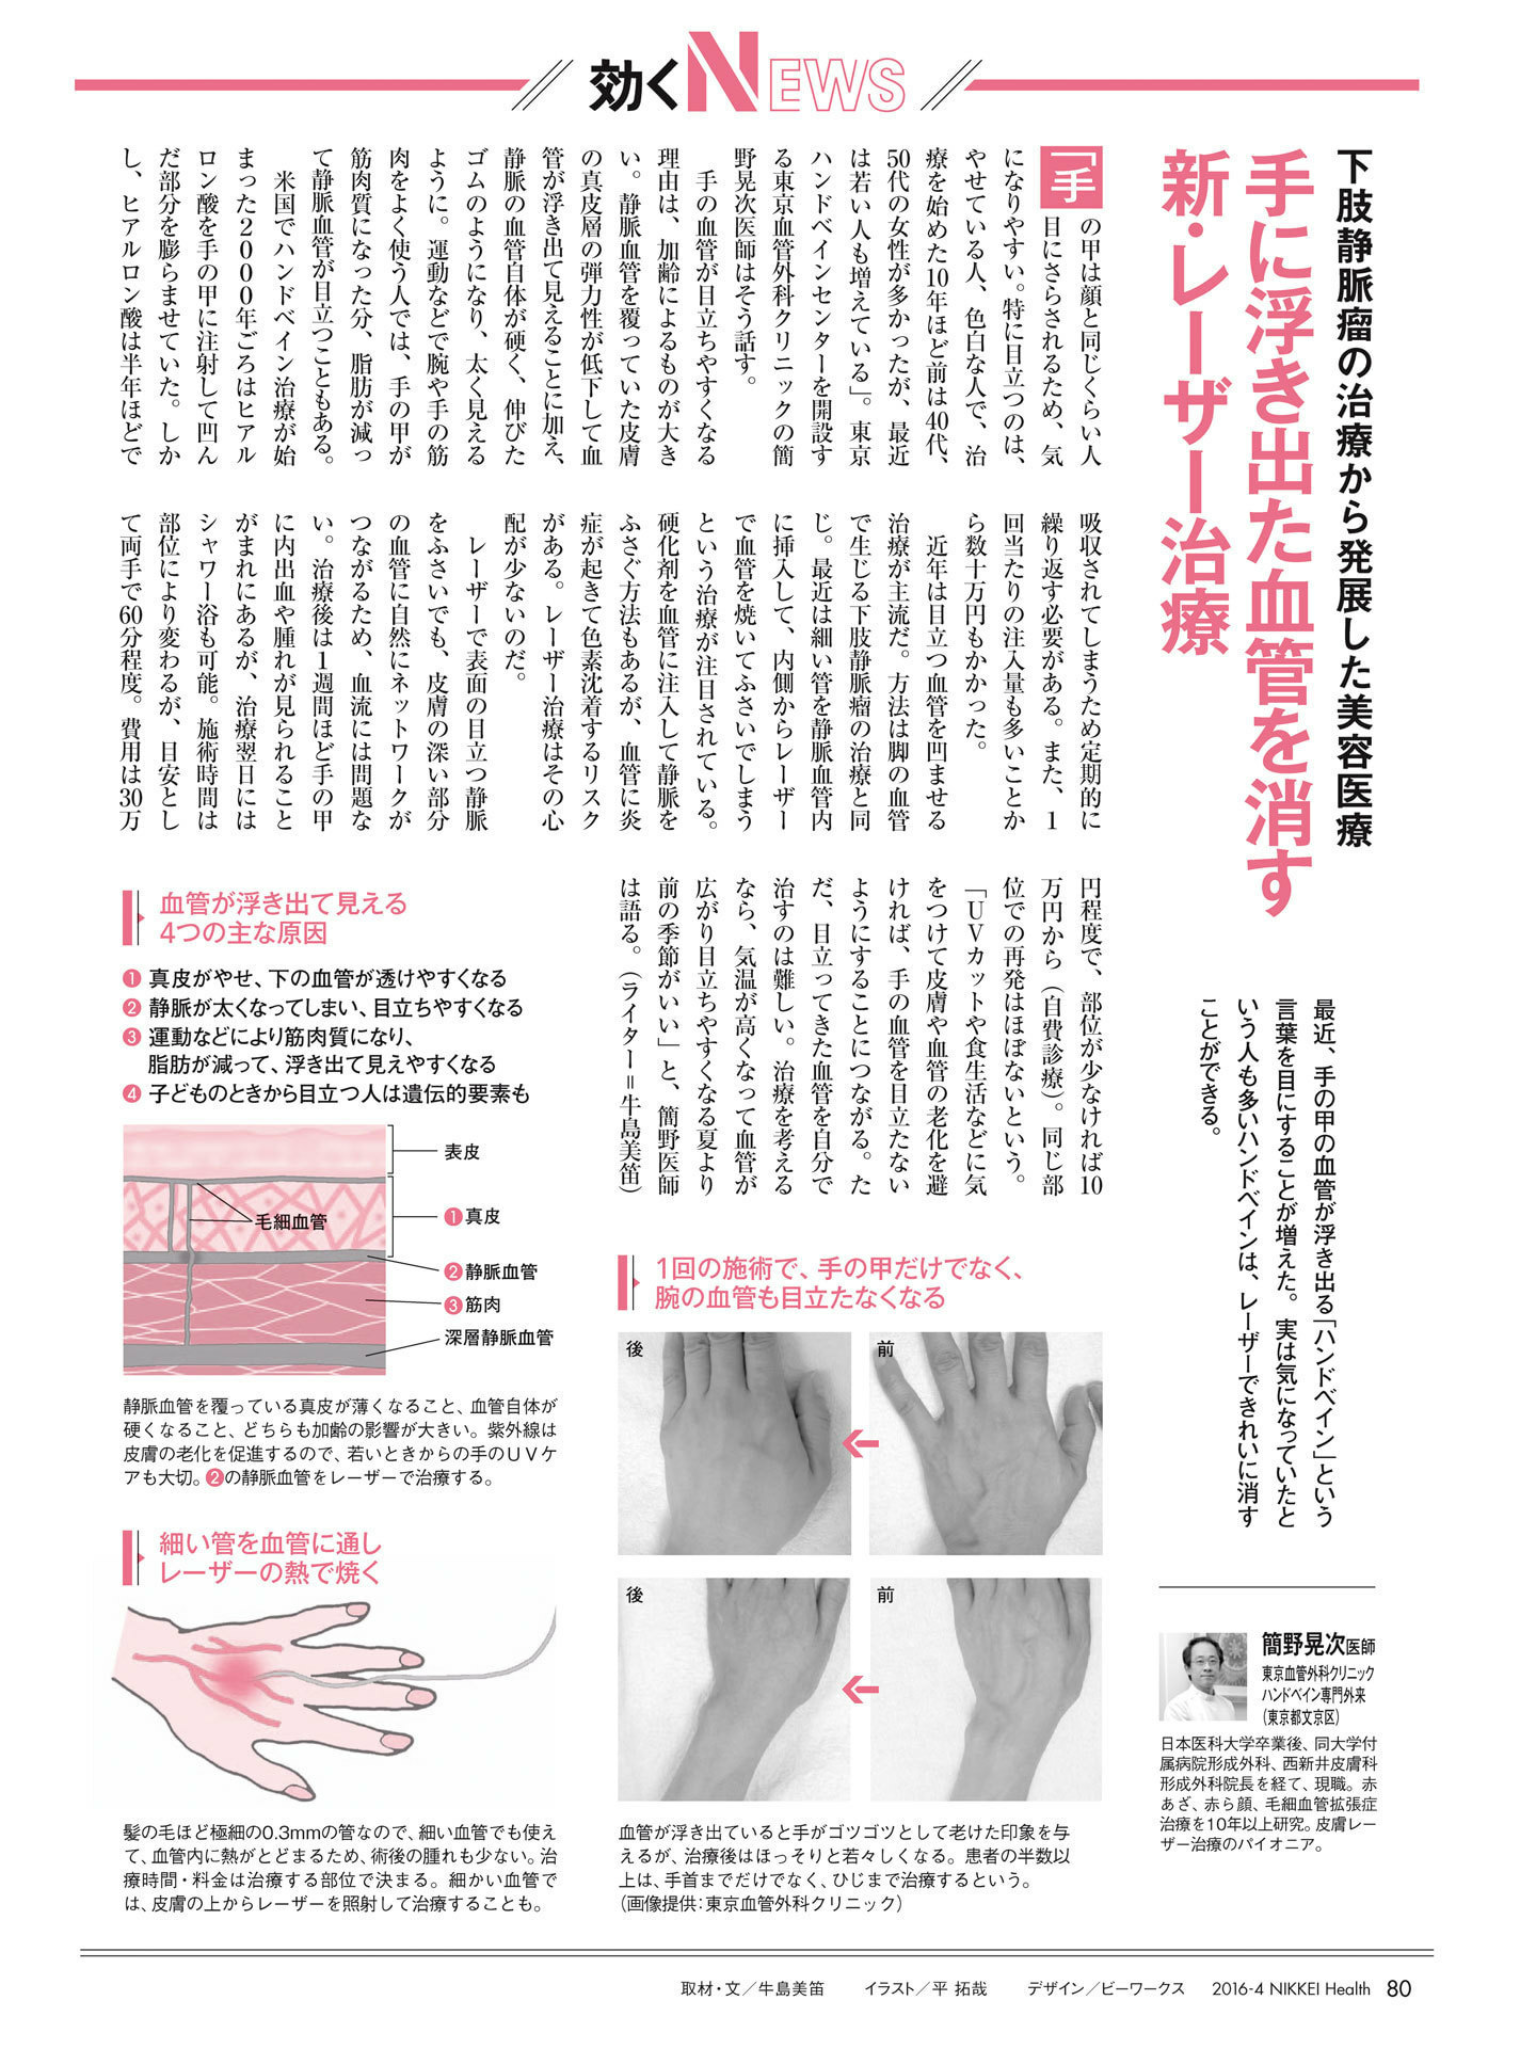 ハンドベイン 手の血管拡張症 東京血管外科クリニック